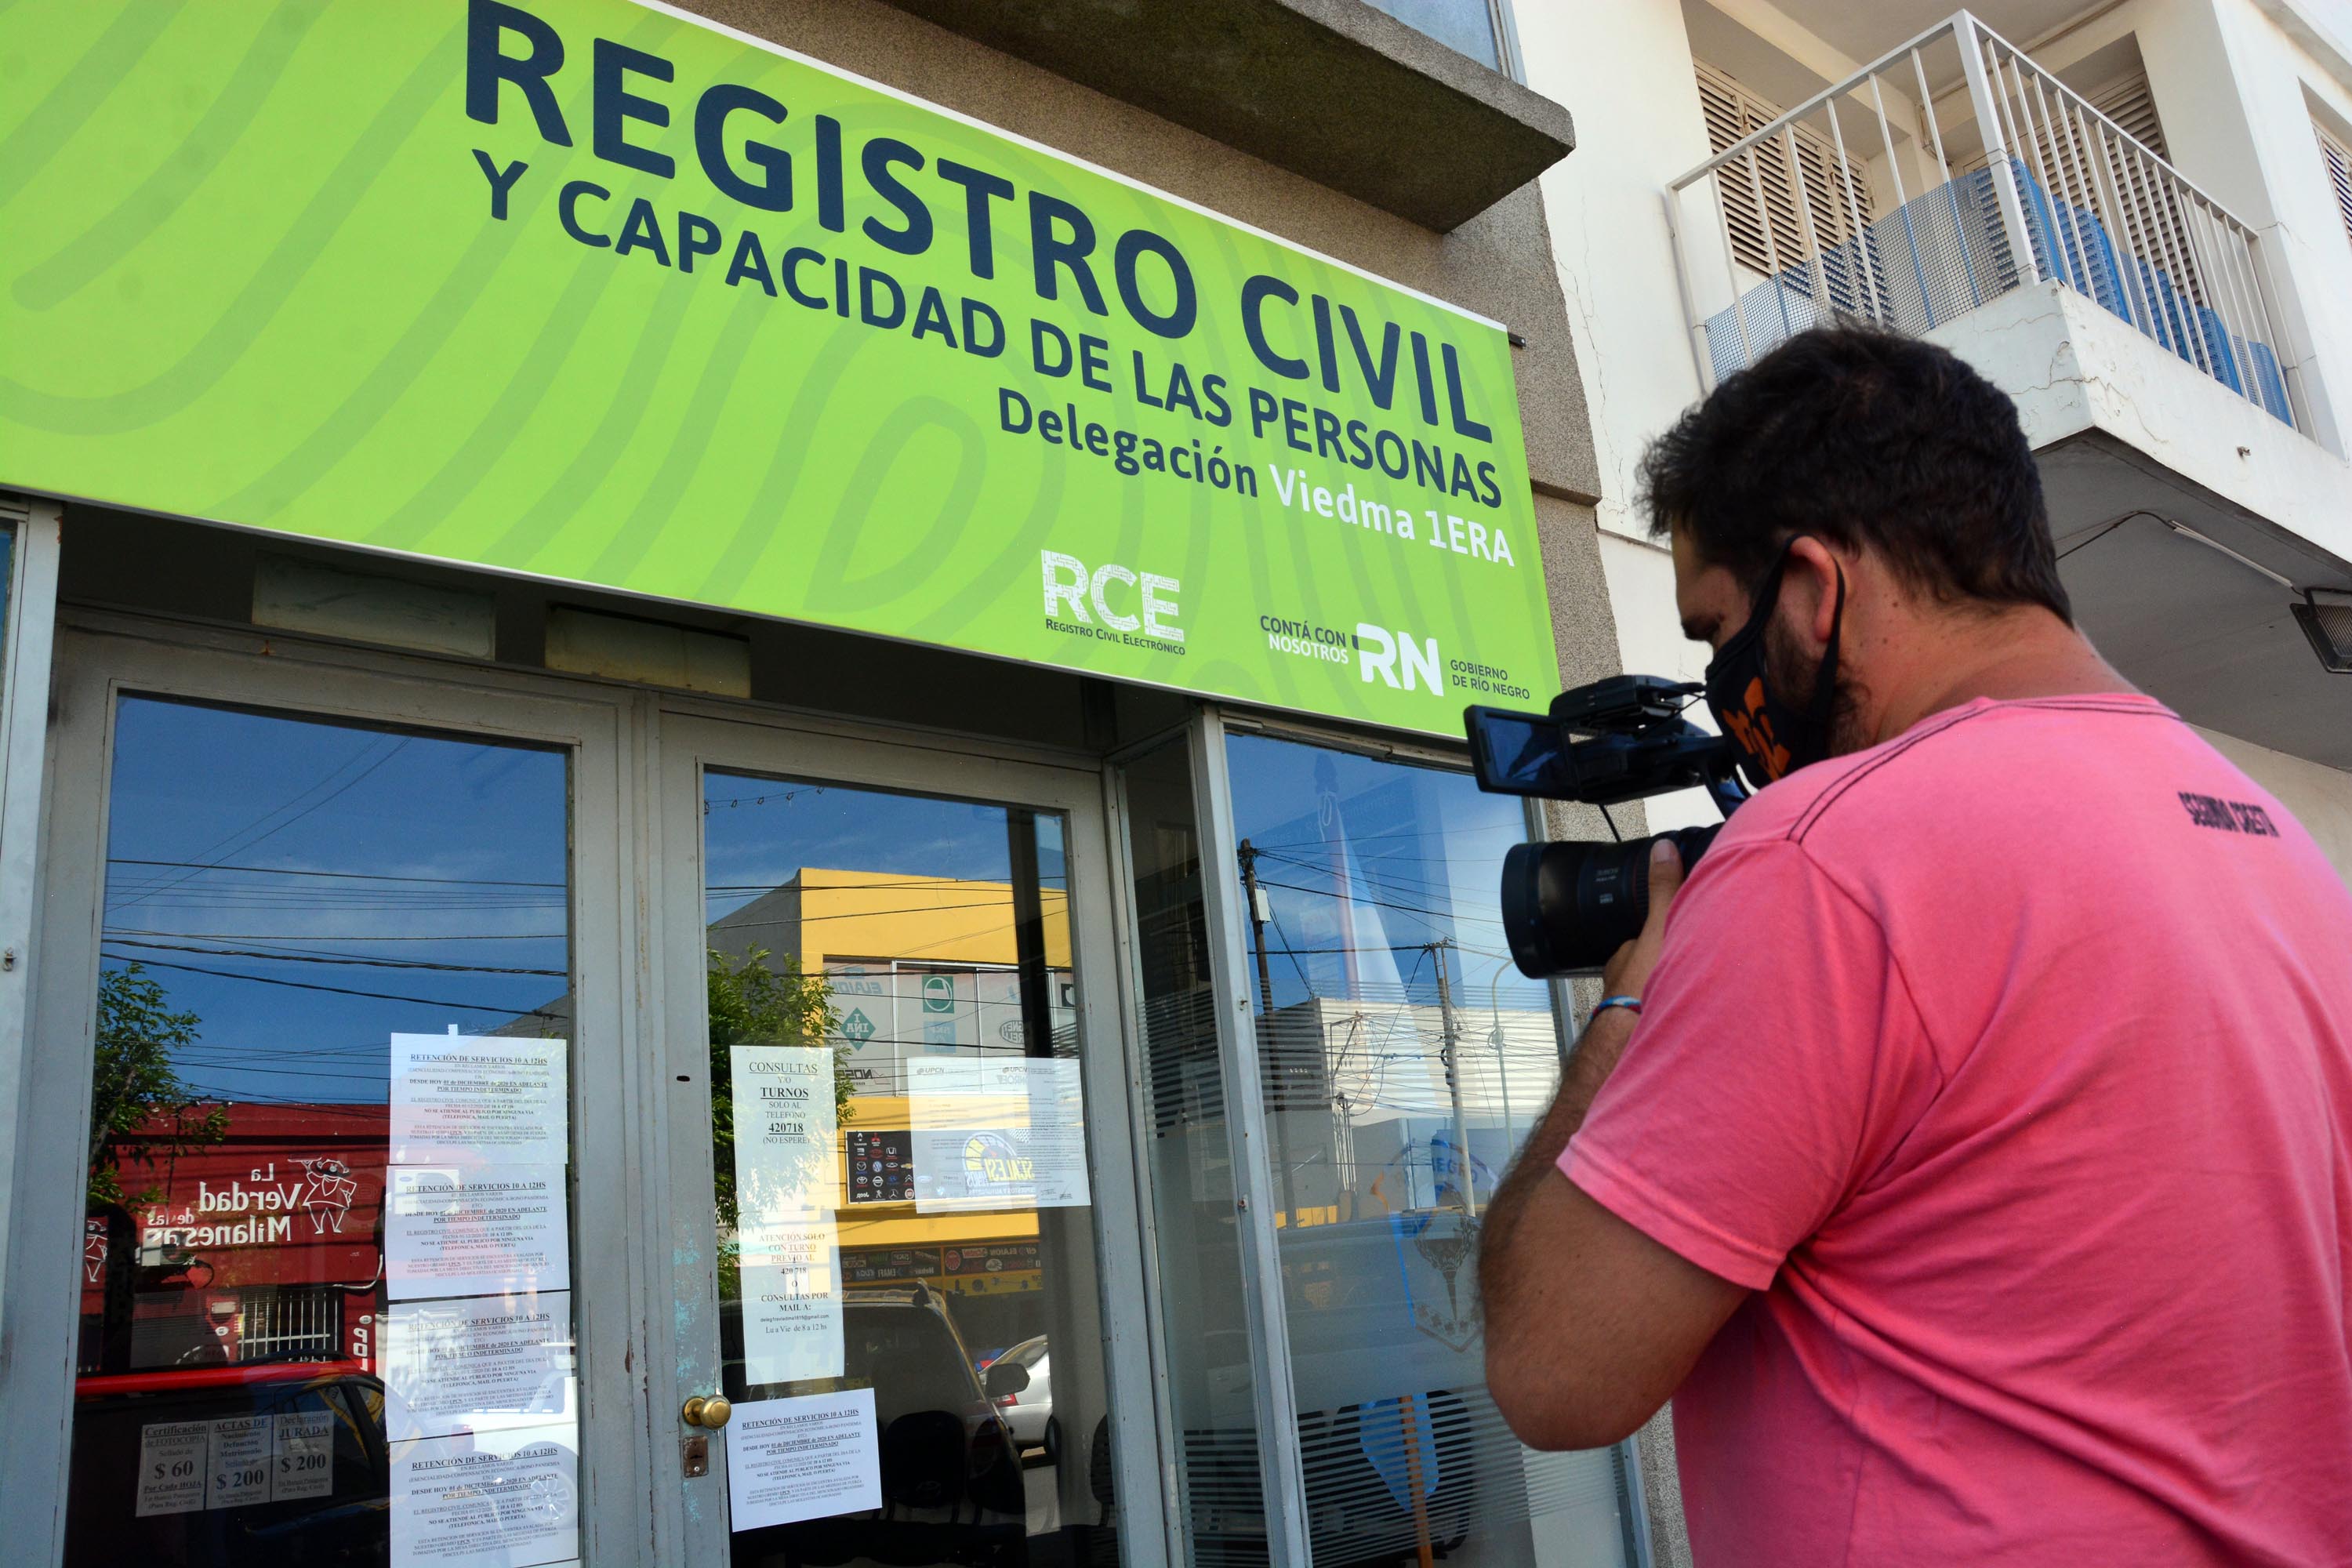 La retención se realiza de 10 a 12 en todas las delegaciones de la provincia. Foto: Marcelo Ochoa.